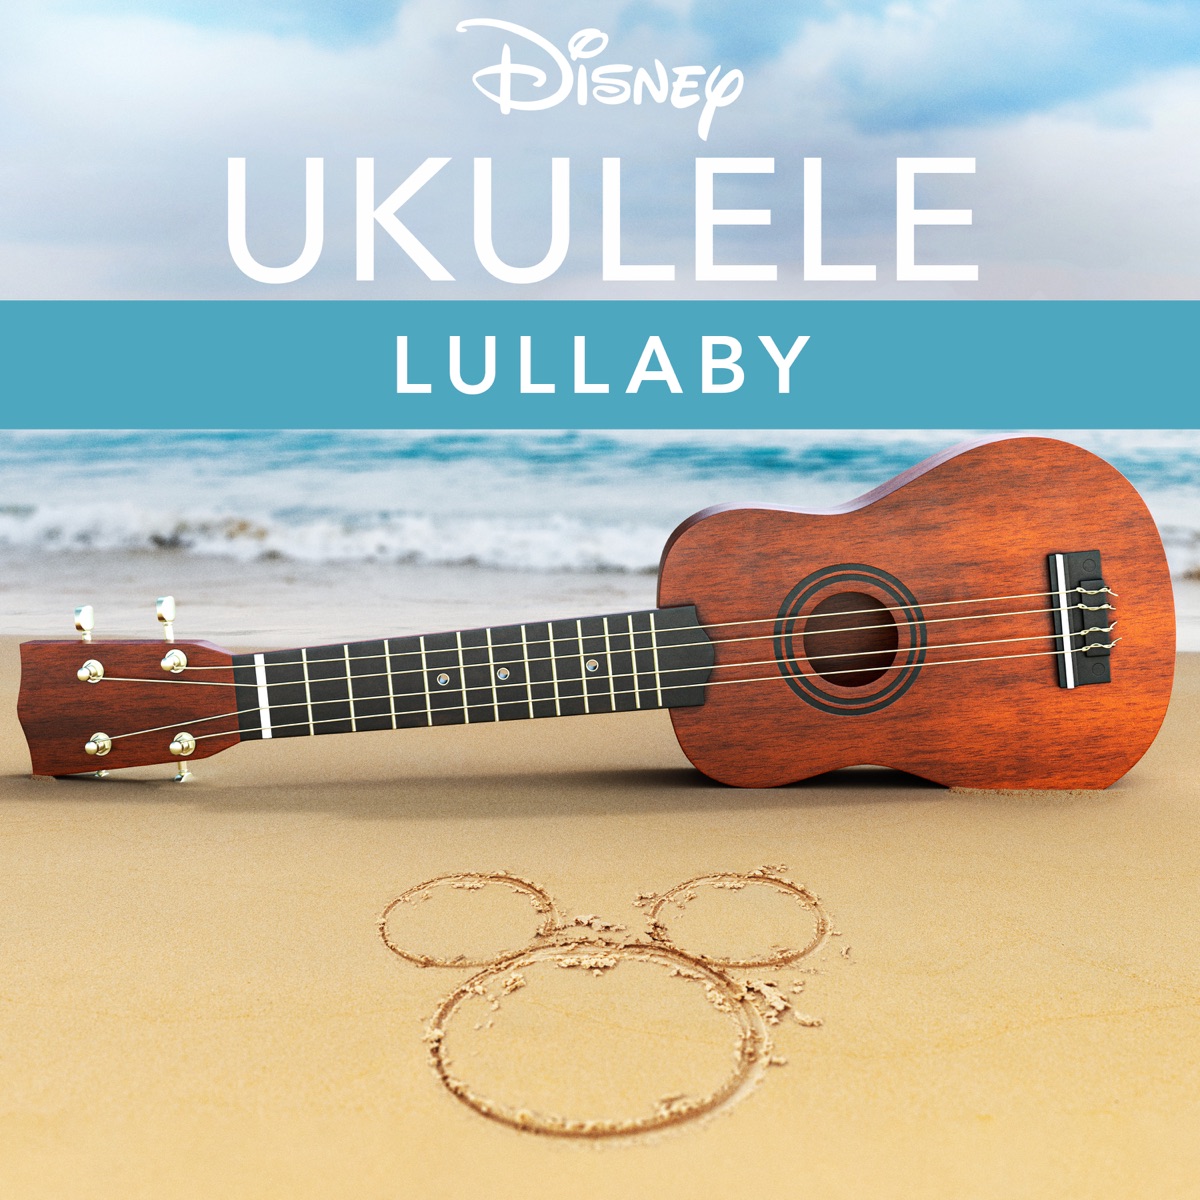 Disney Ukulele: Lullaby - EP - Album by Disney Ukulele - Apple Music